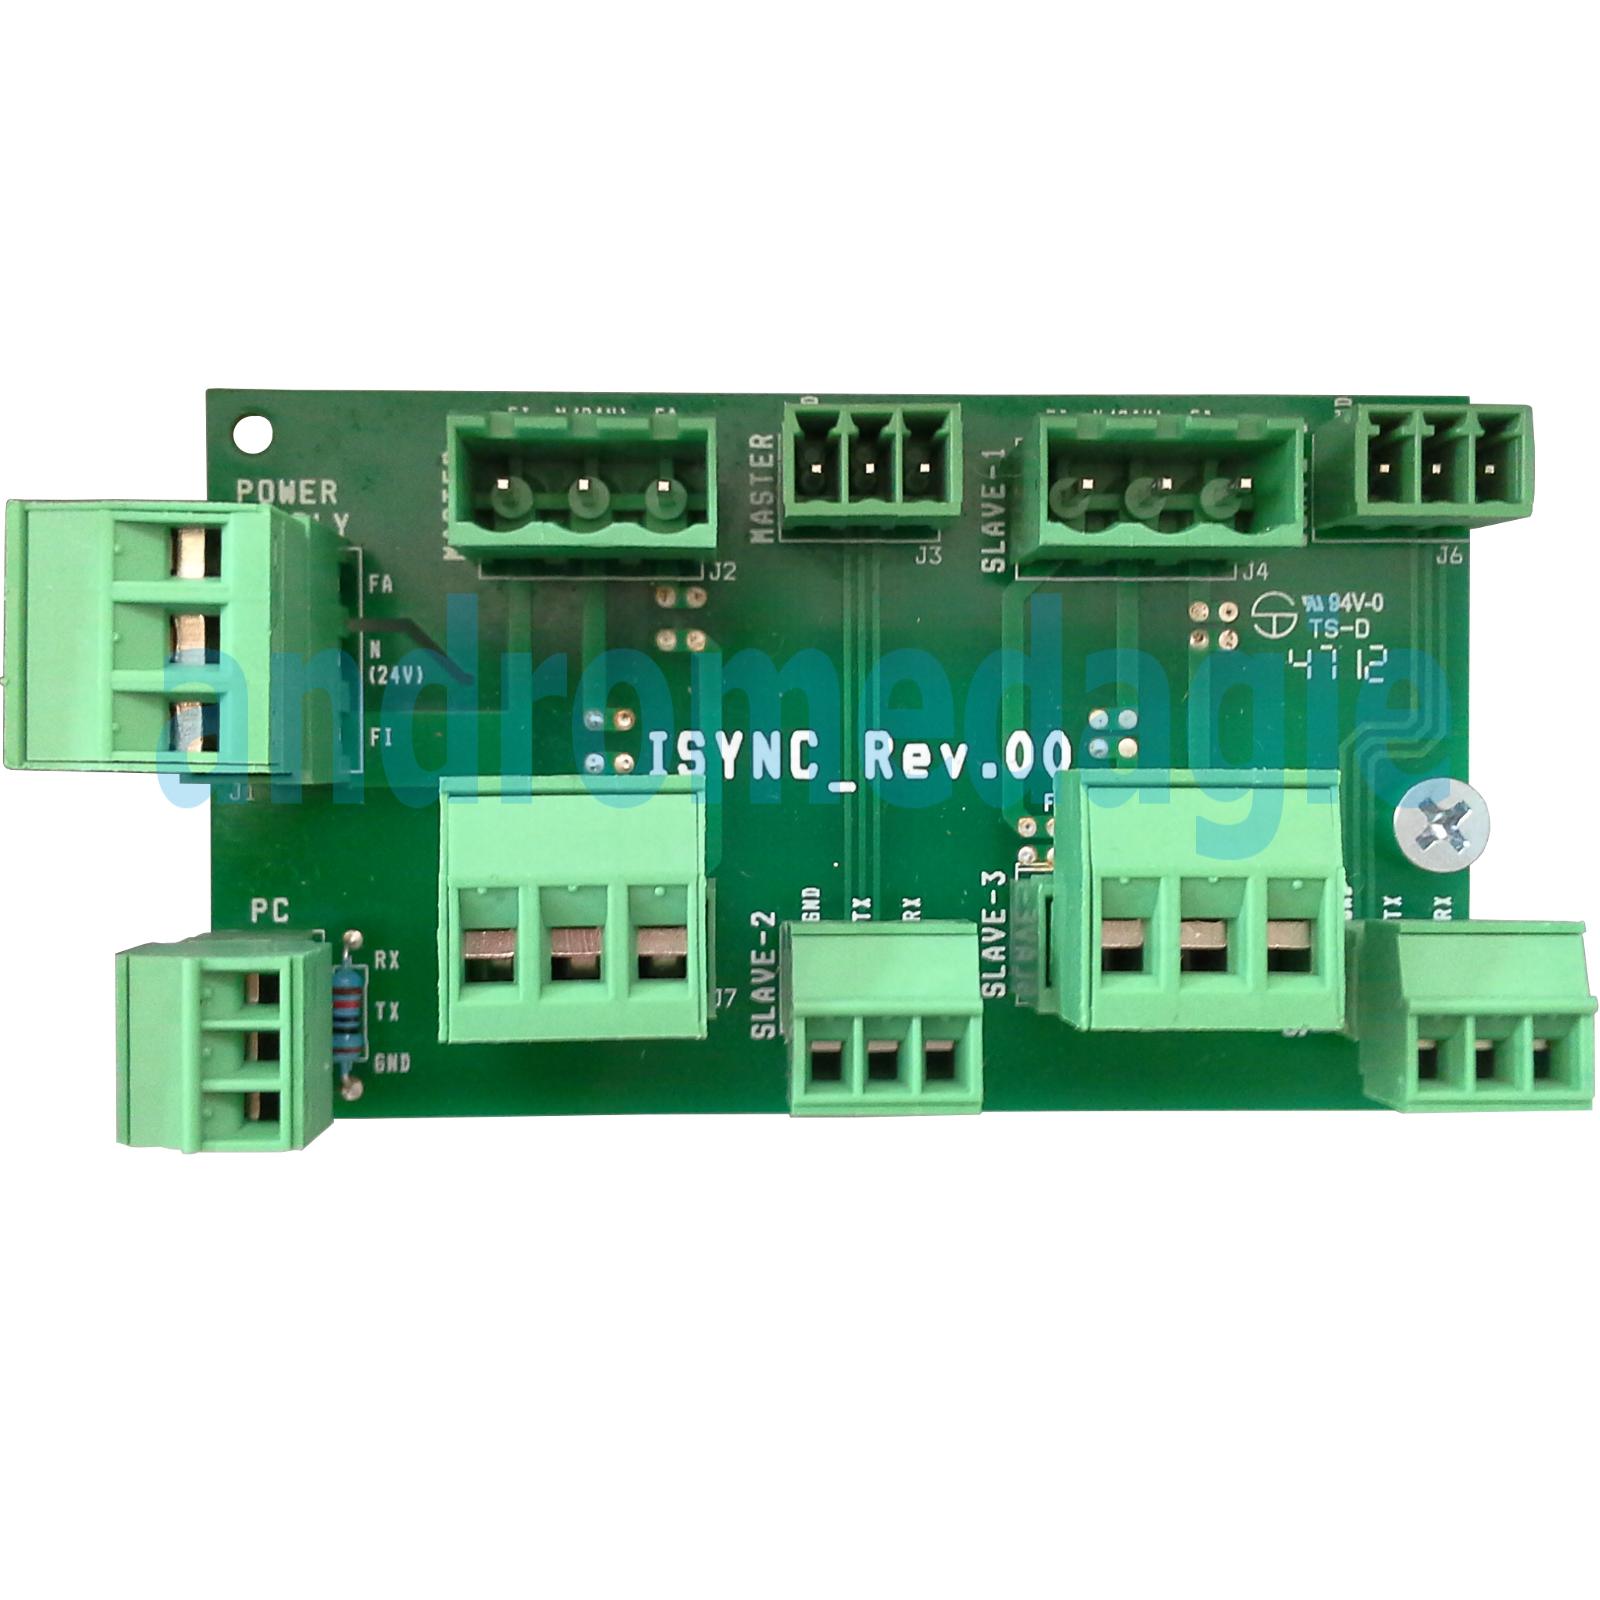 LIWIN 2W-NET RADIO 350N 230V NERO + R1 CONTROL VERDE + STAFFE ABBAINO NERE